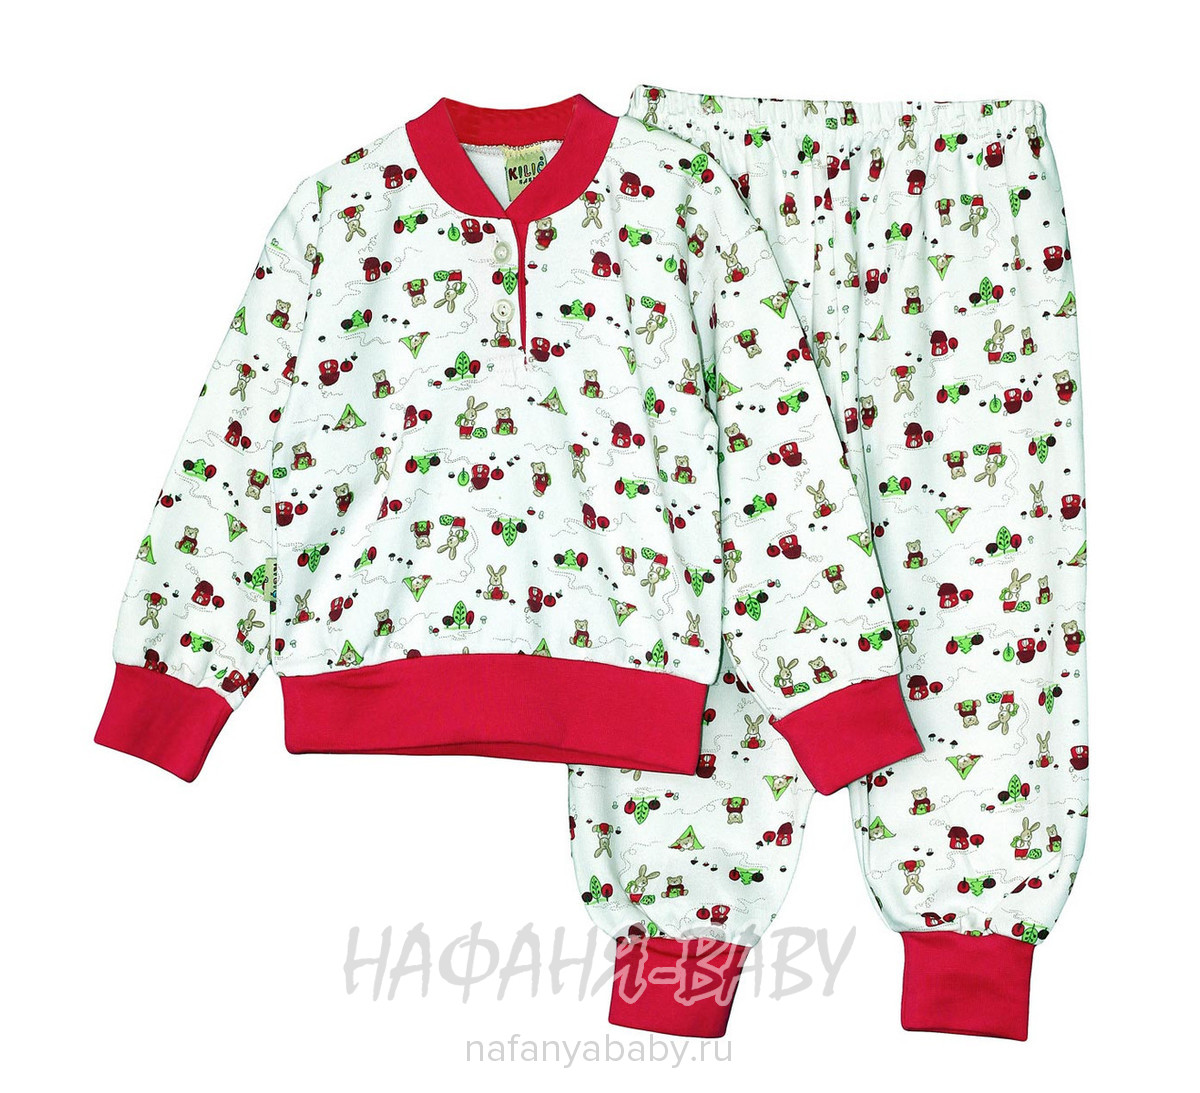 Детская пижама KILIG, купить в интернет магазине Нафаня. арт: 2110.